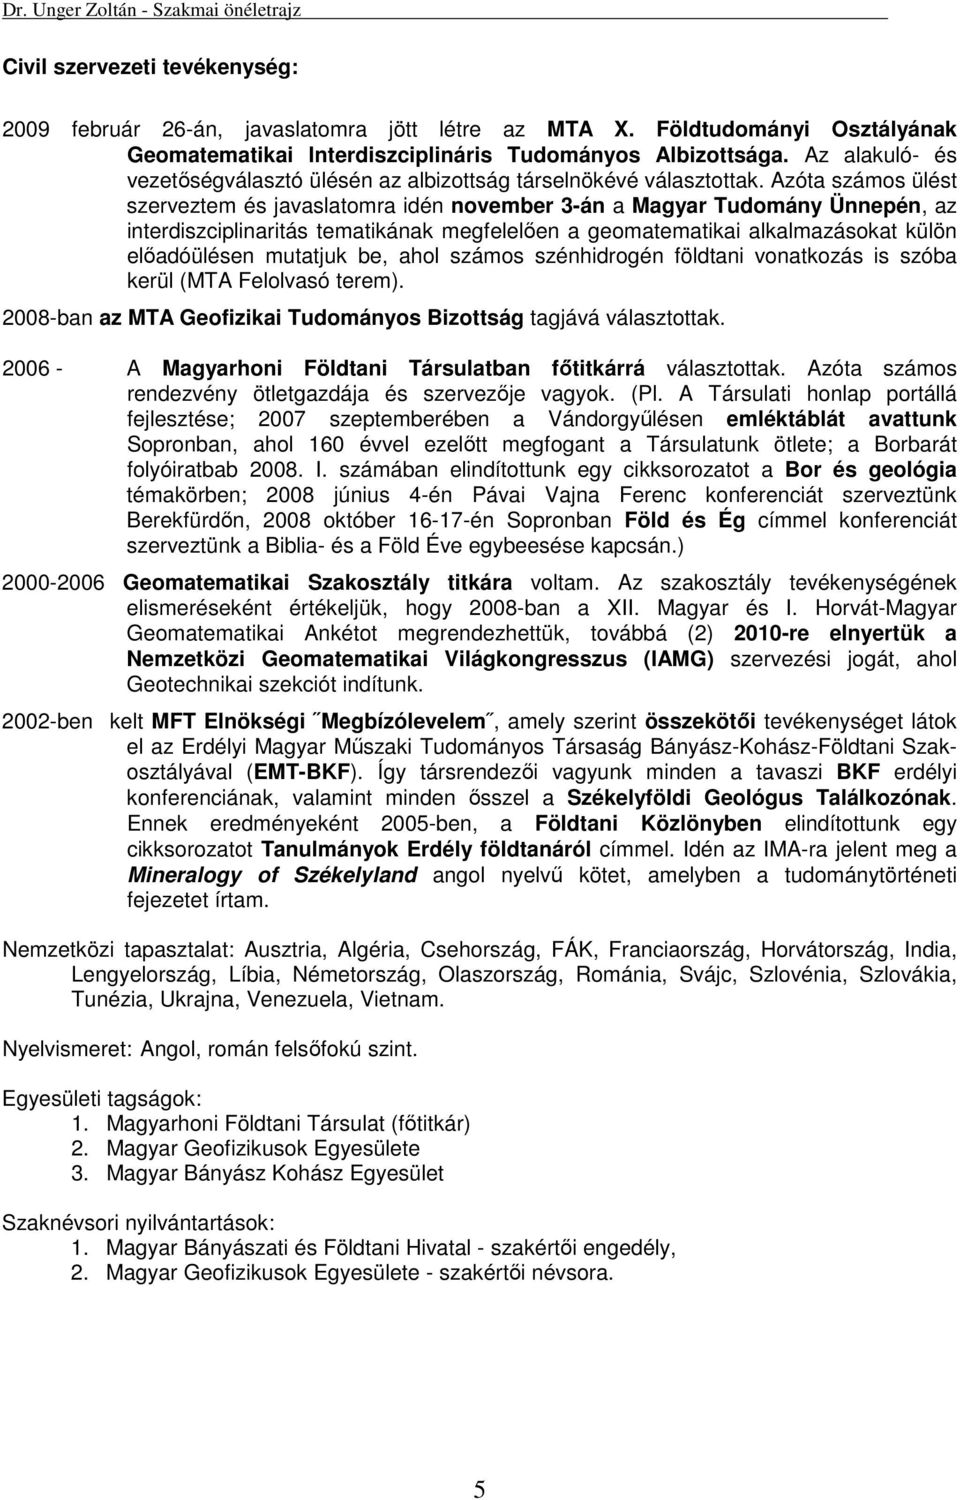 Azóta számos ülést szerveztem és javaslatomra idén november 3-án a Magyar Tudomány Ünnepén, az interdiszciplinaritás tematikának megfelelően a geomatematikai alkalmazásokat külön előadóülésen